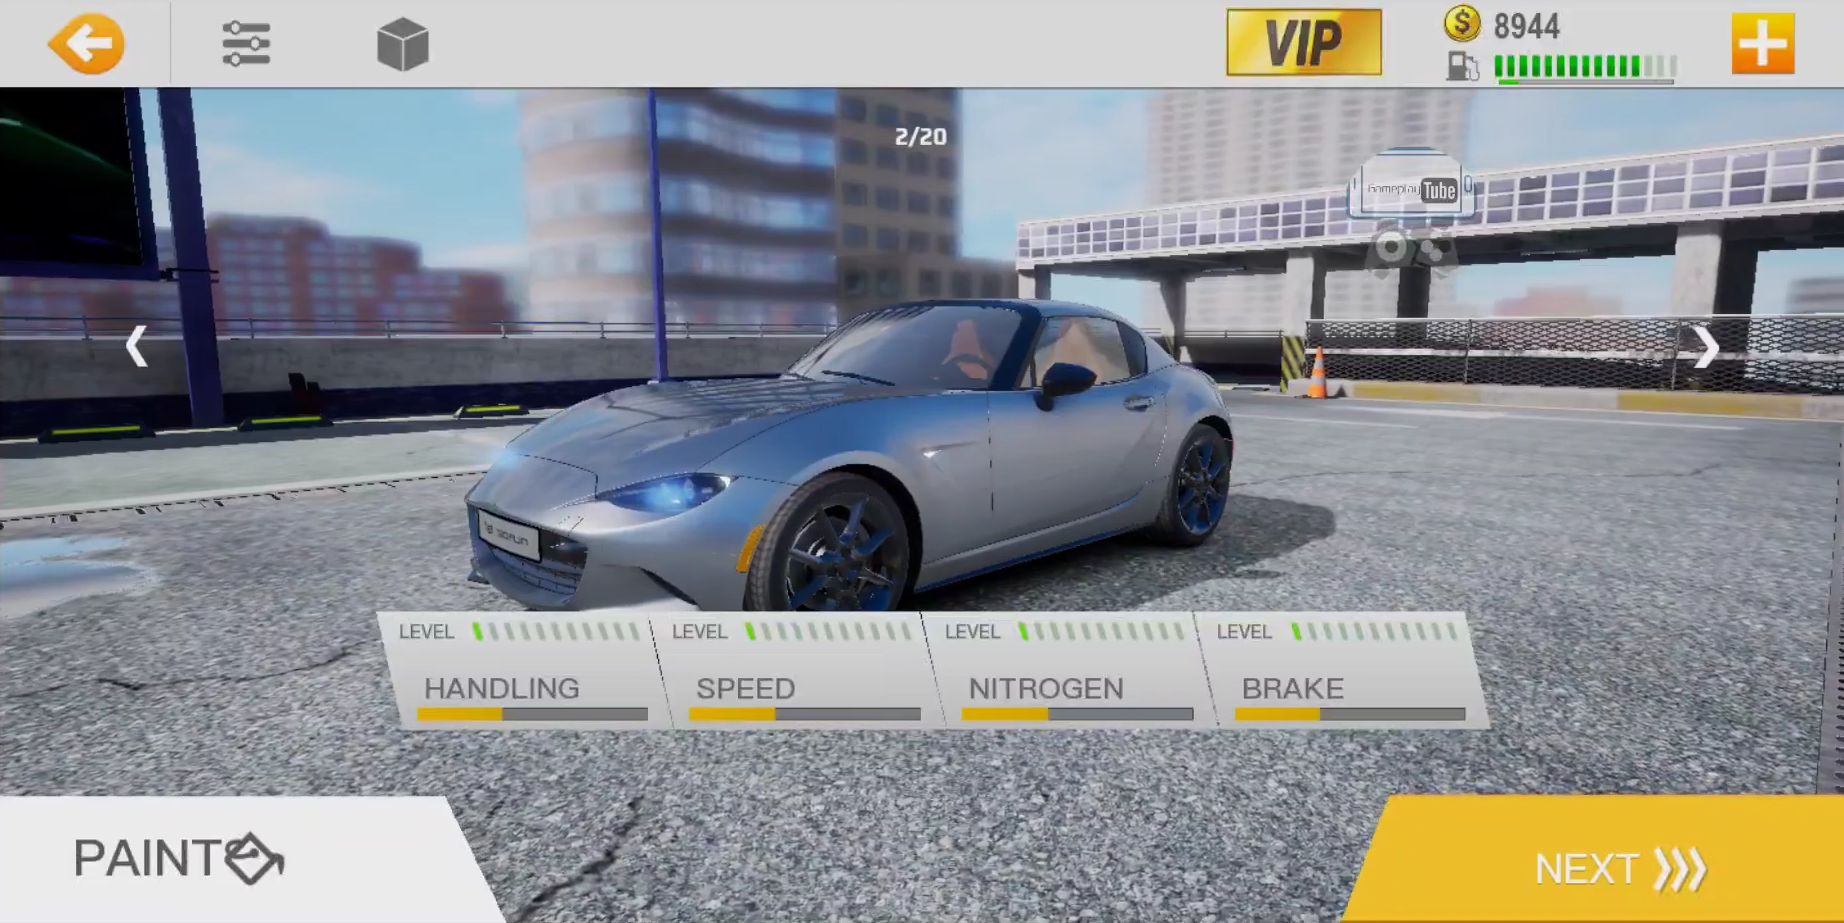 Real Driving 2:Ultimate Car Simulator